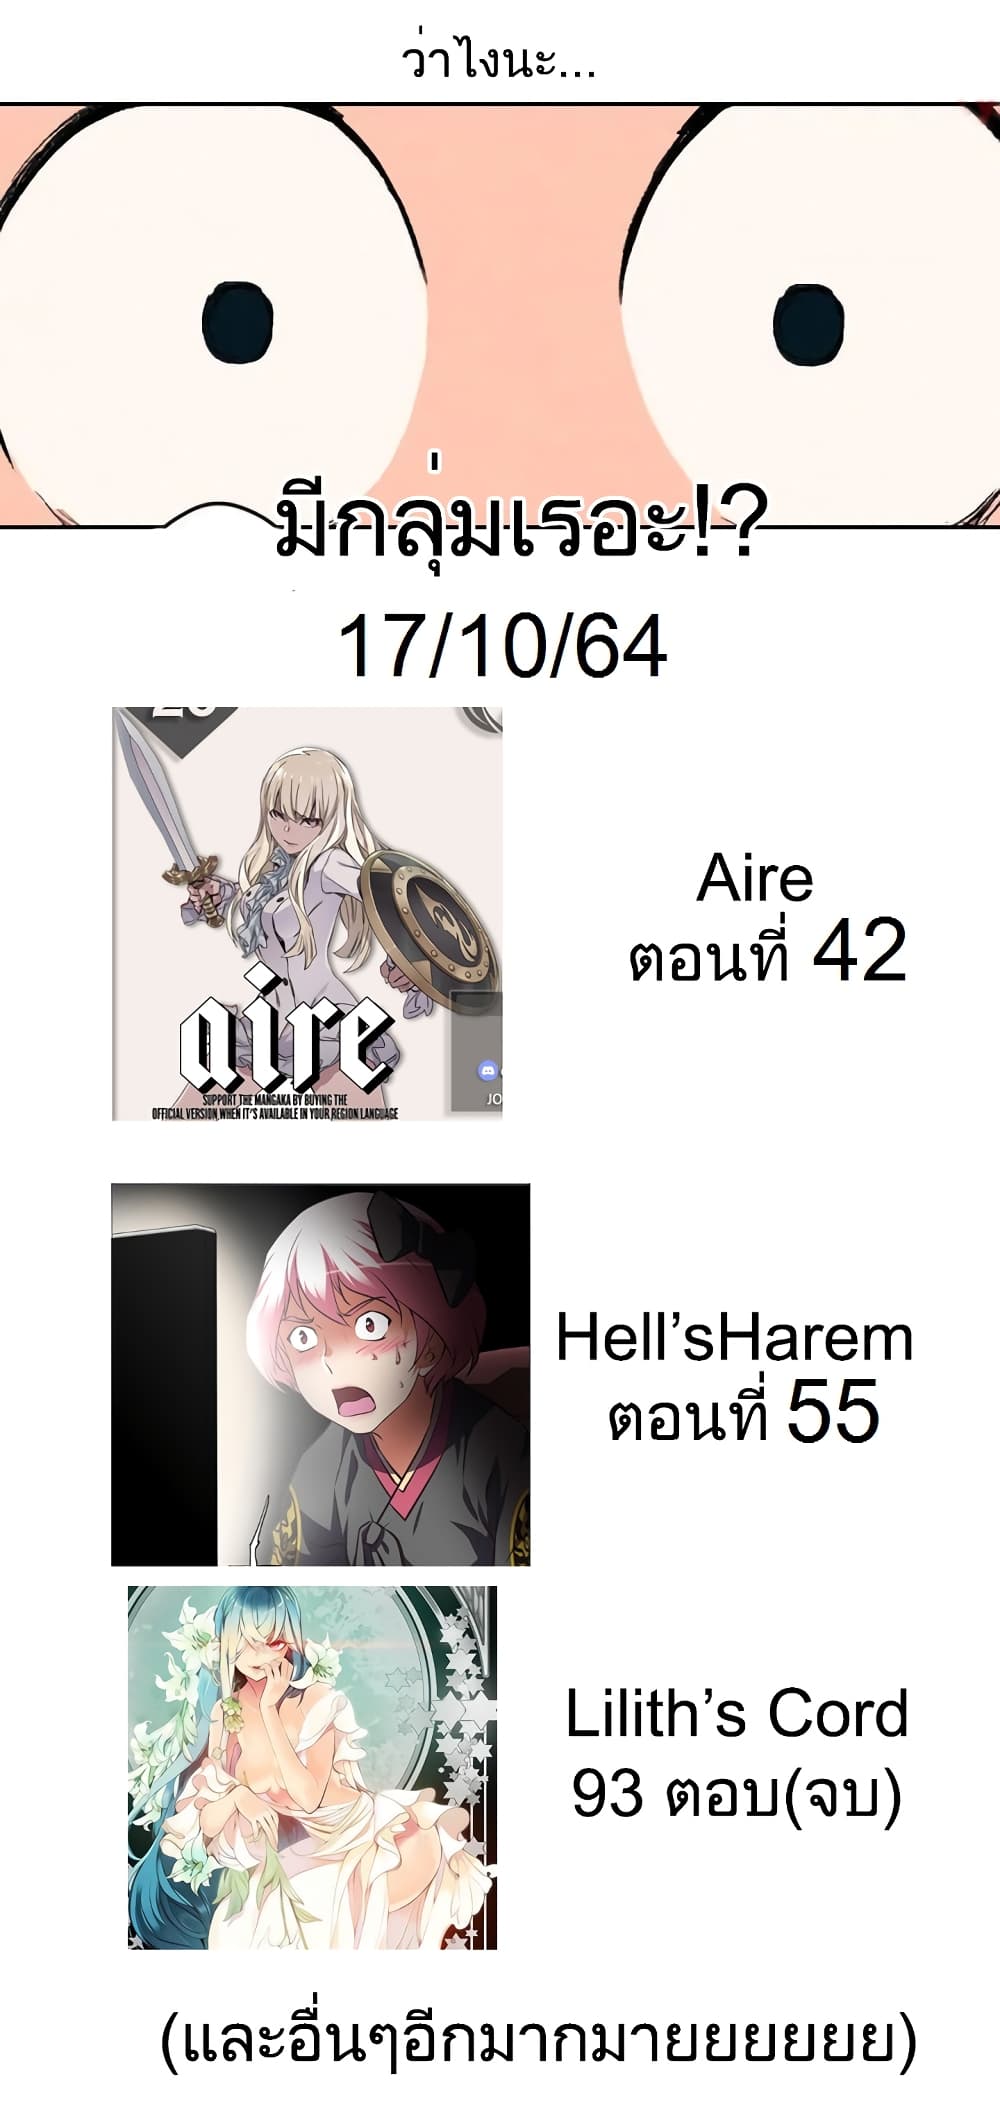 Hell's Harem 37 (11)